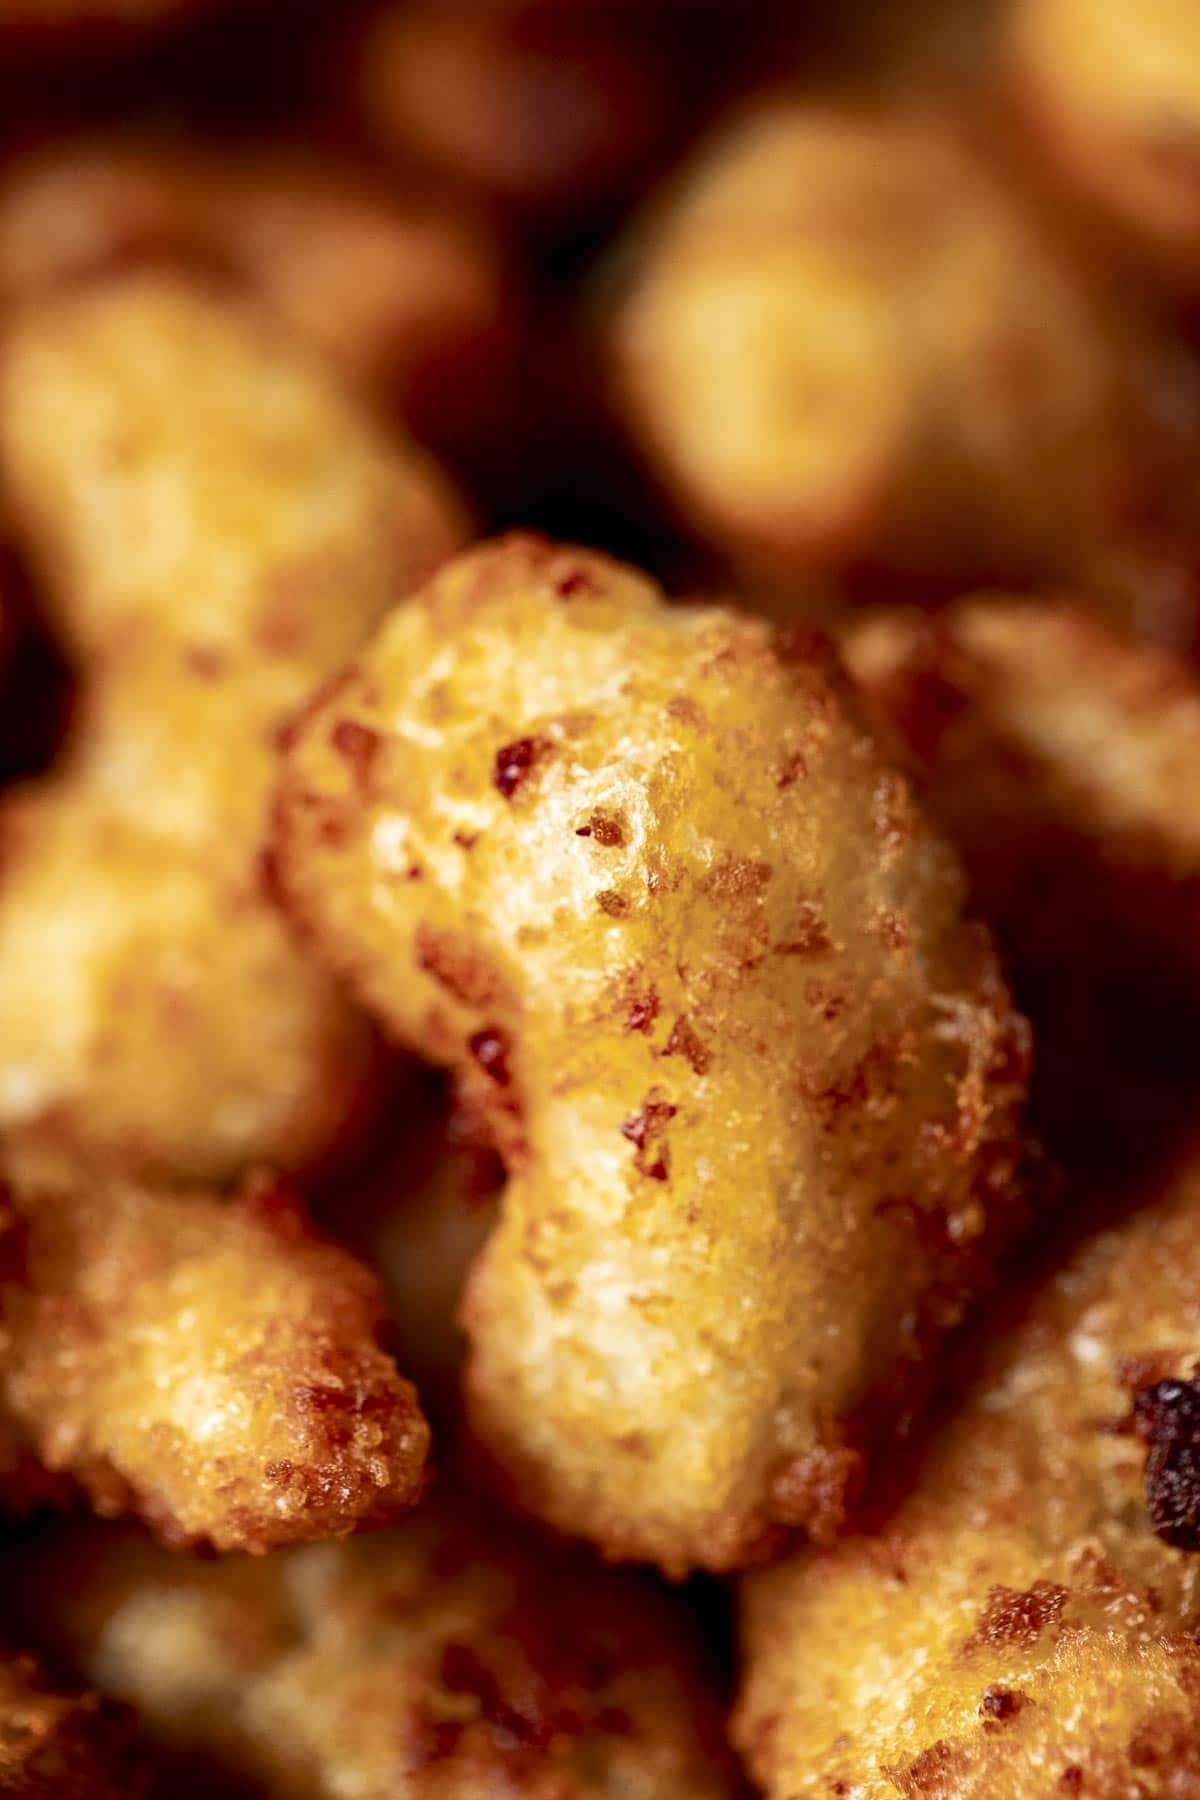 Close up view of a popcorn shrimp.